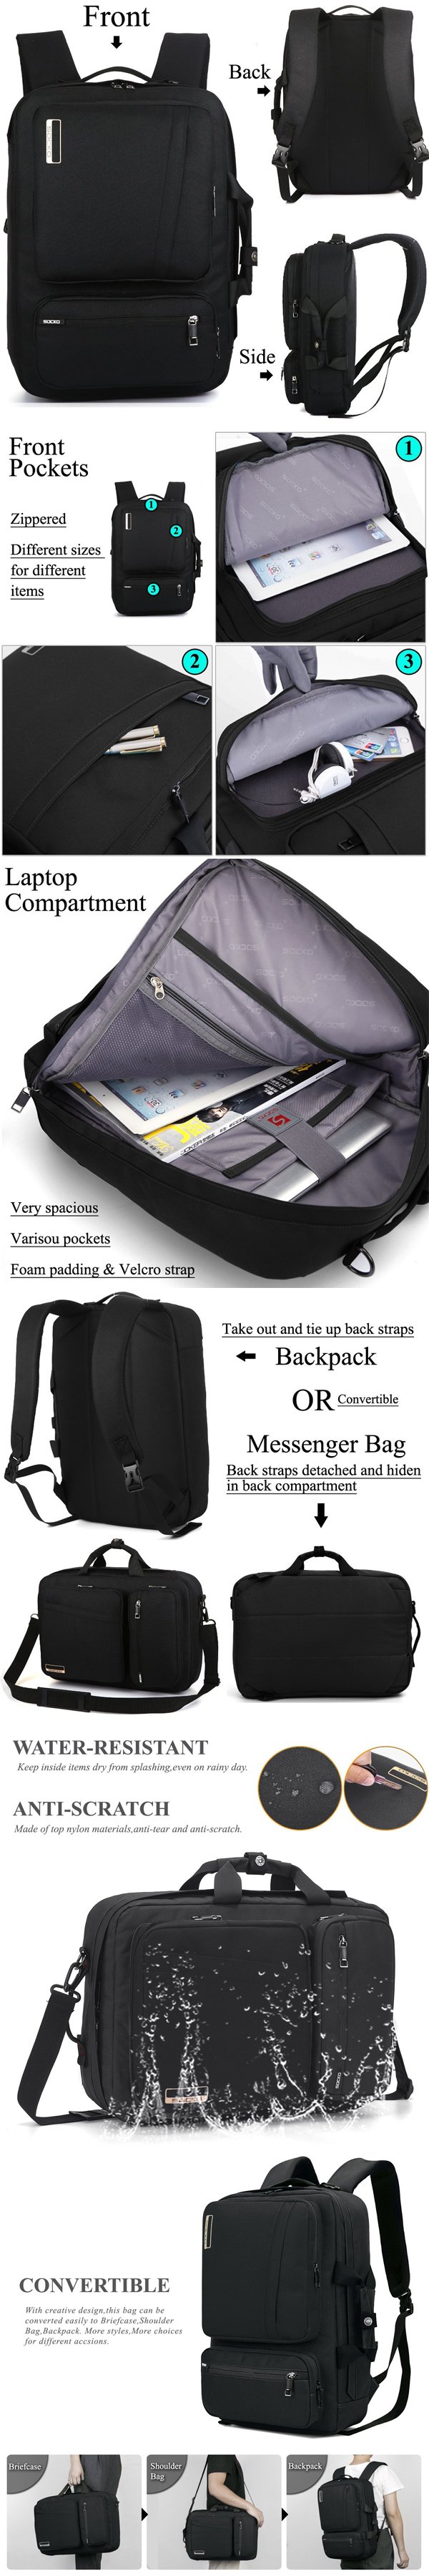 Jansicotek Campus Backpack Women Men Lightweight Laptop Backpack 15.6 Inch  Slim Ultra-Light and Compact School Work Shoulder Bag for Casual Daypack  Travelling, Black 